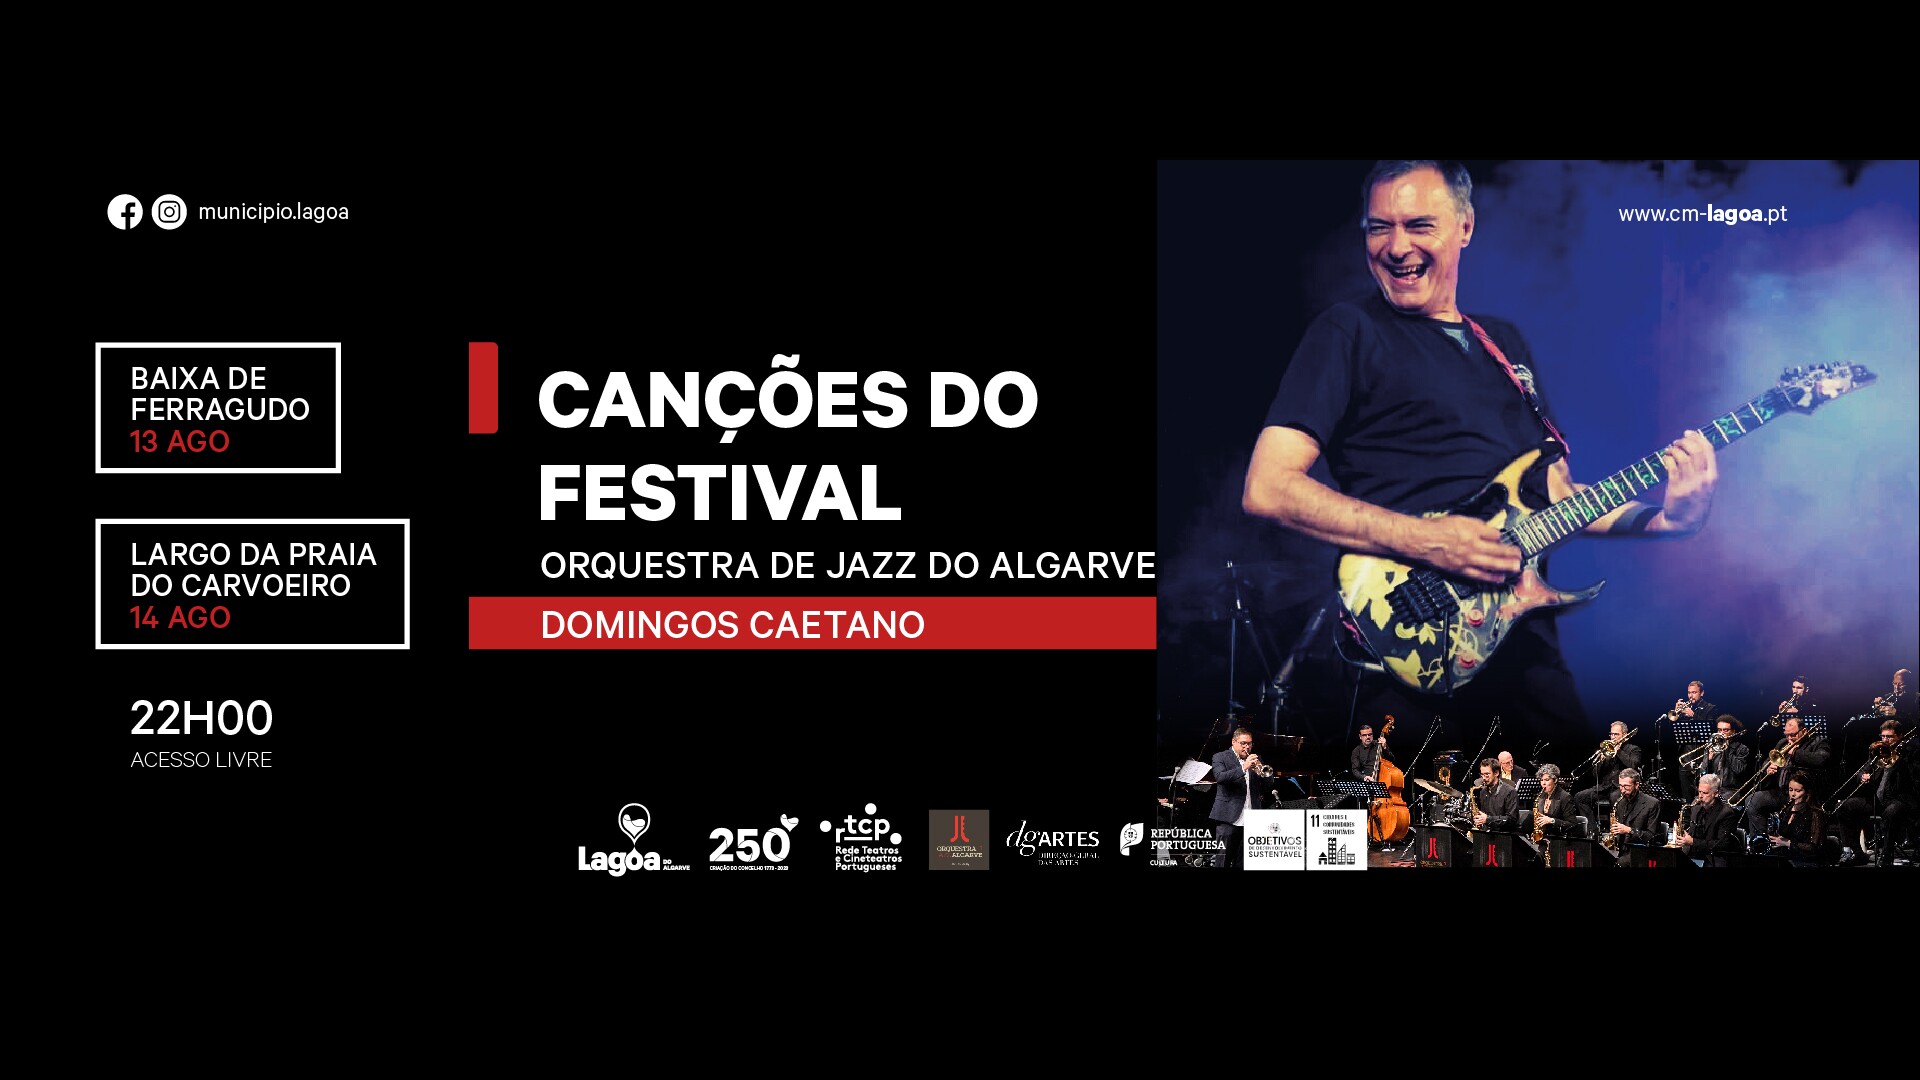 Canções do Festival" | Orquestra de Jazz do Algarve | Domingos Caetano